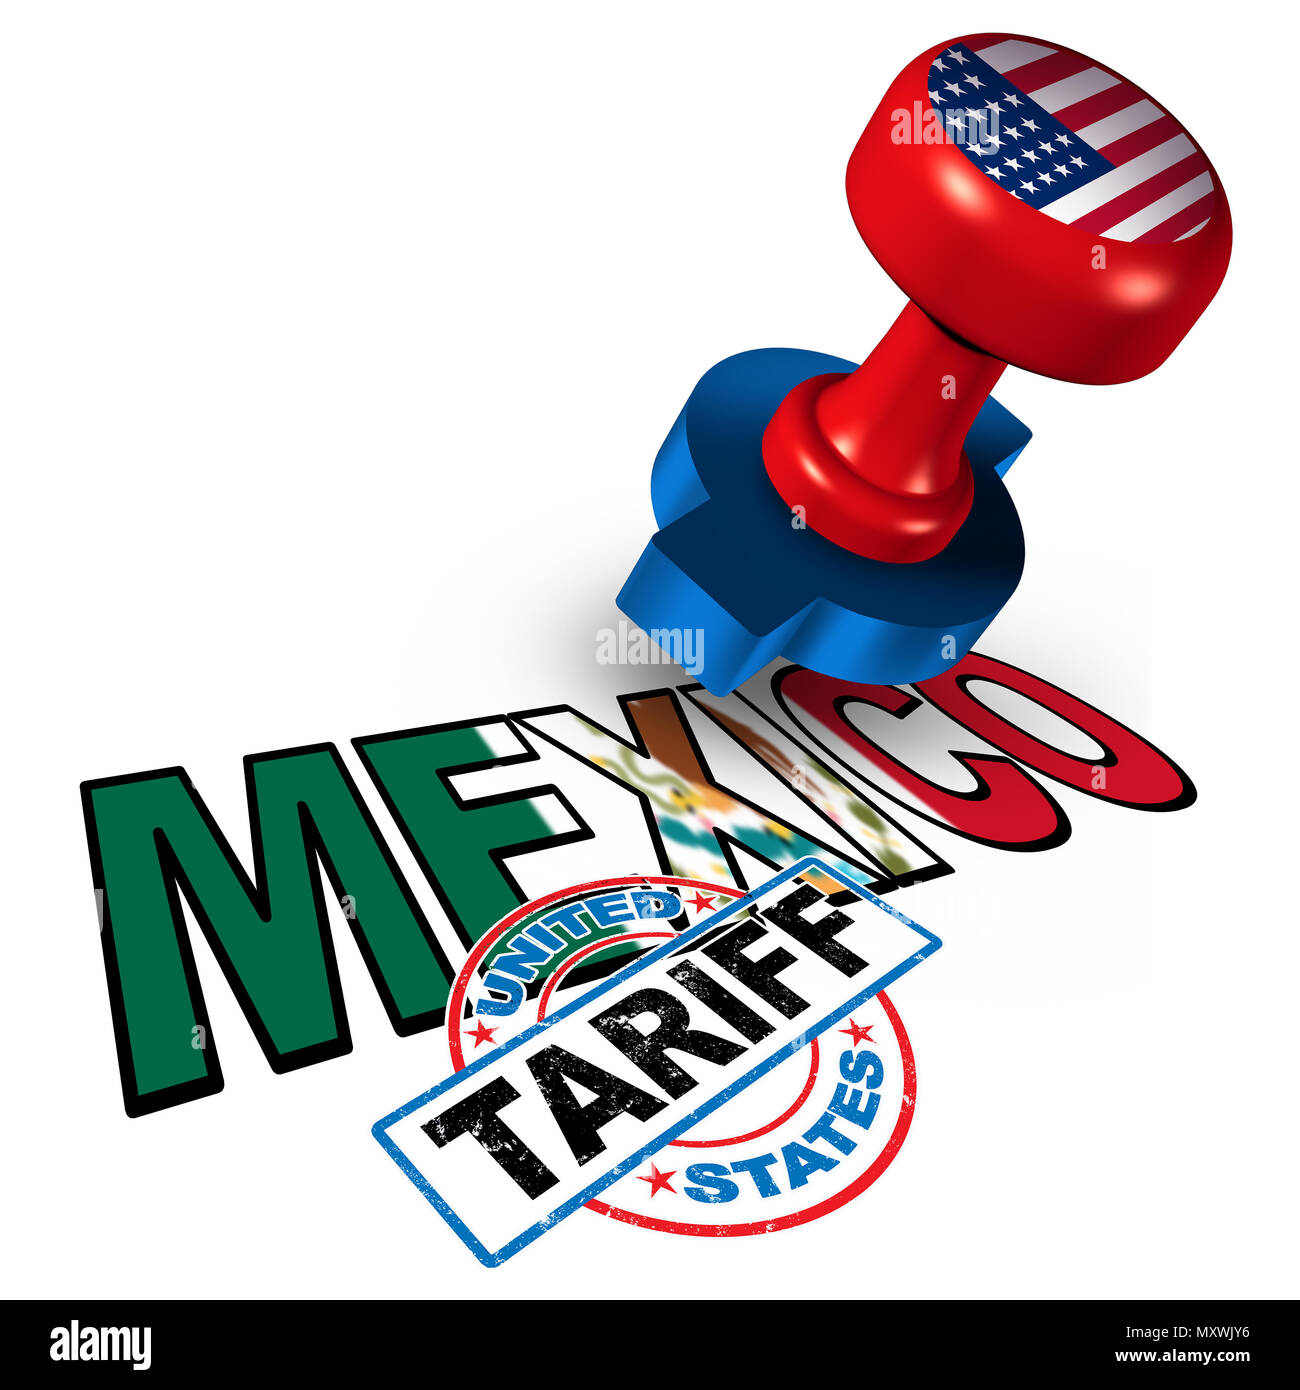 Mexiko Vereinigte Staaten Tarif auf mexikanische Stahl und Aluminium Tarife wie einen Stempel auf Text als wirtschaftliche Handels Besteuerung NAFTA Dispute. Stockfoto